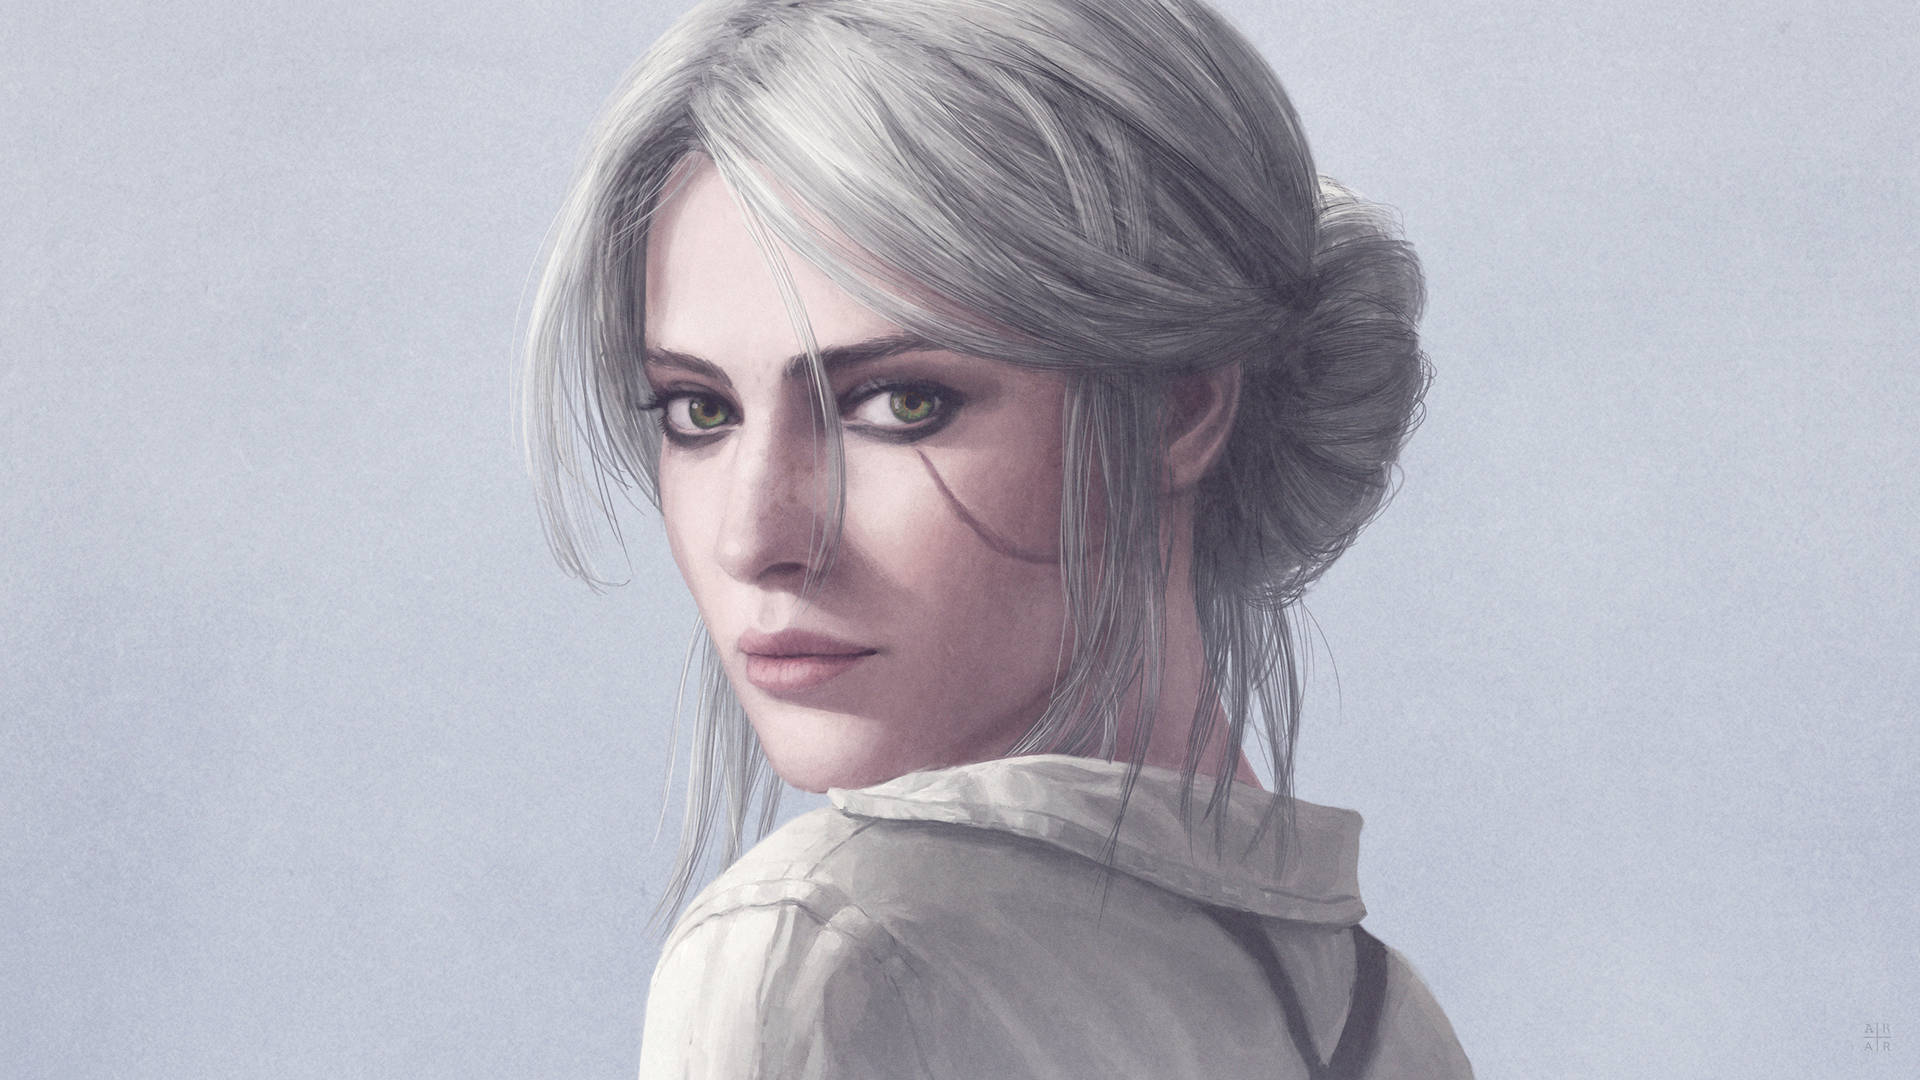 Ciri, en Hovedperson af Witcher 3, Portræt Wallpaper